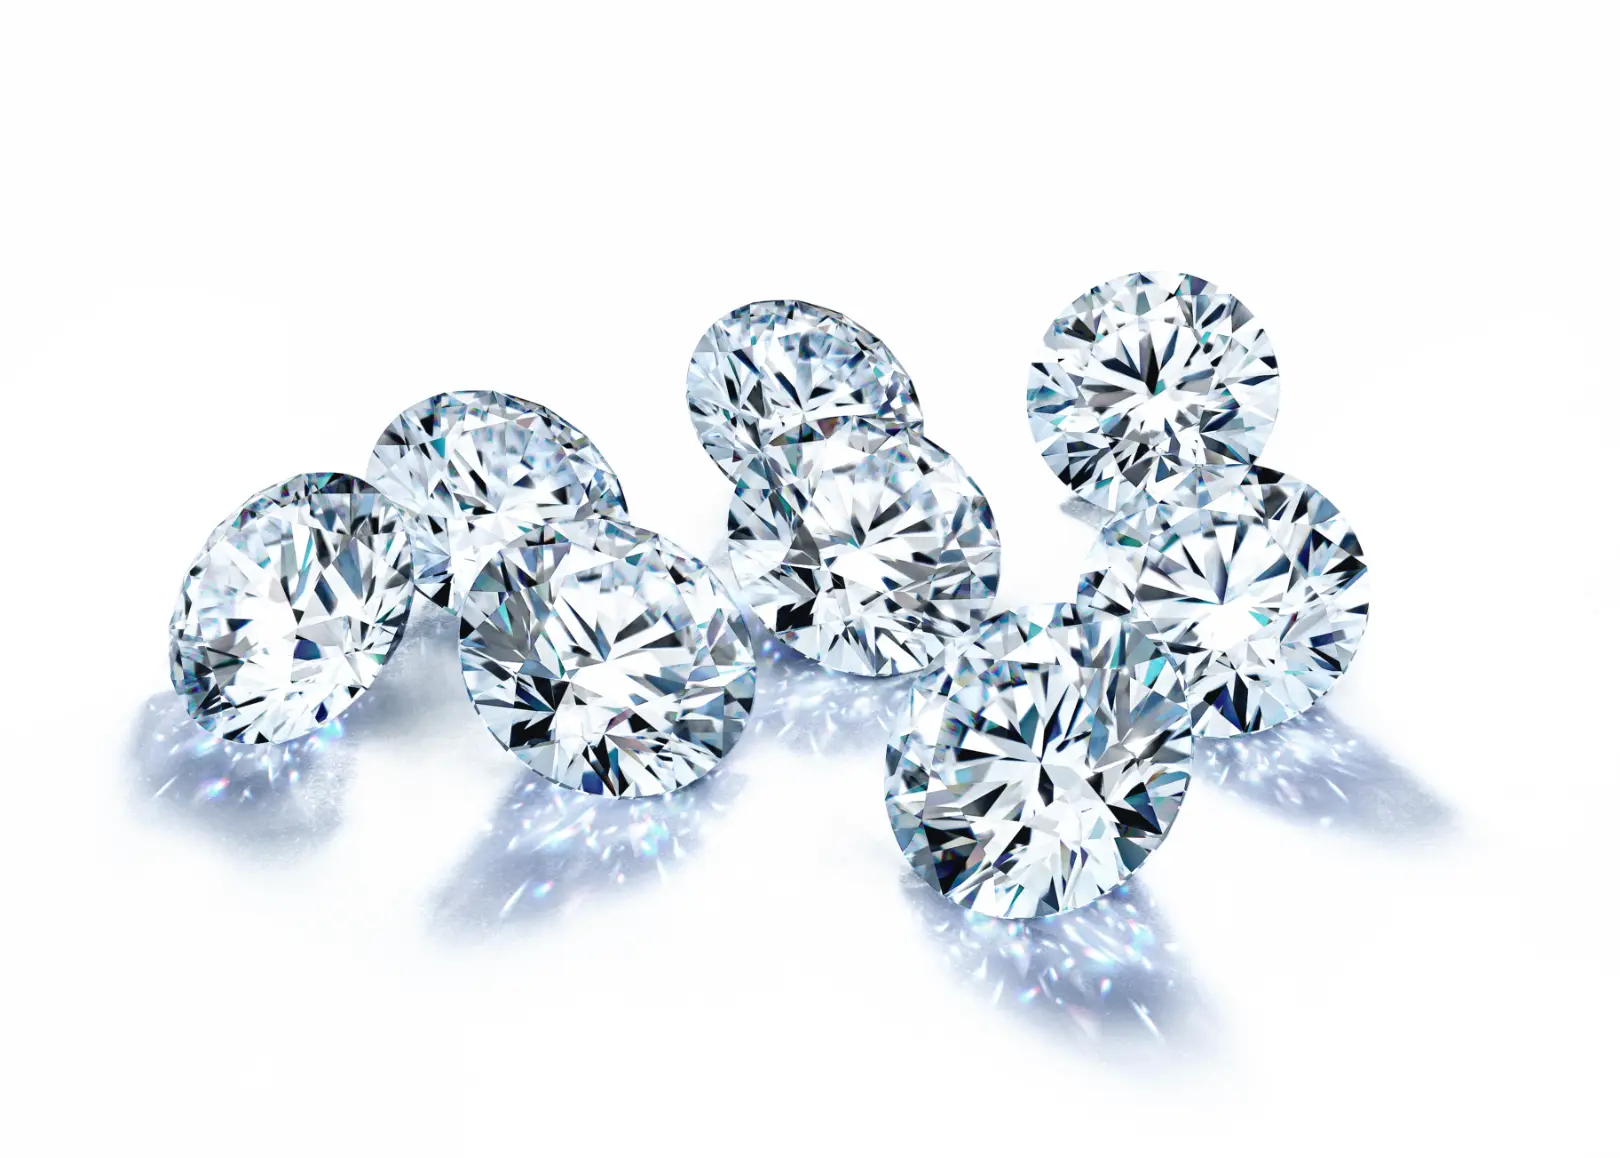 Conflict free diamonds